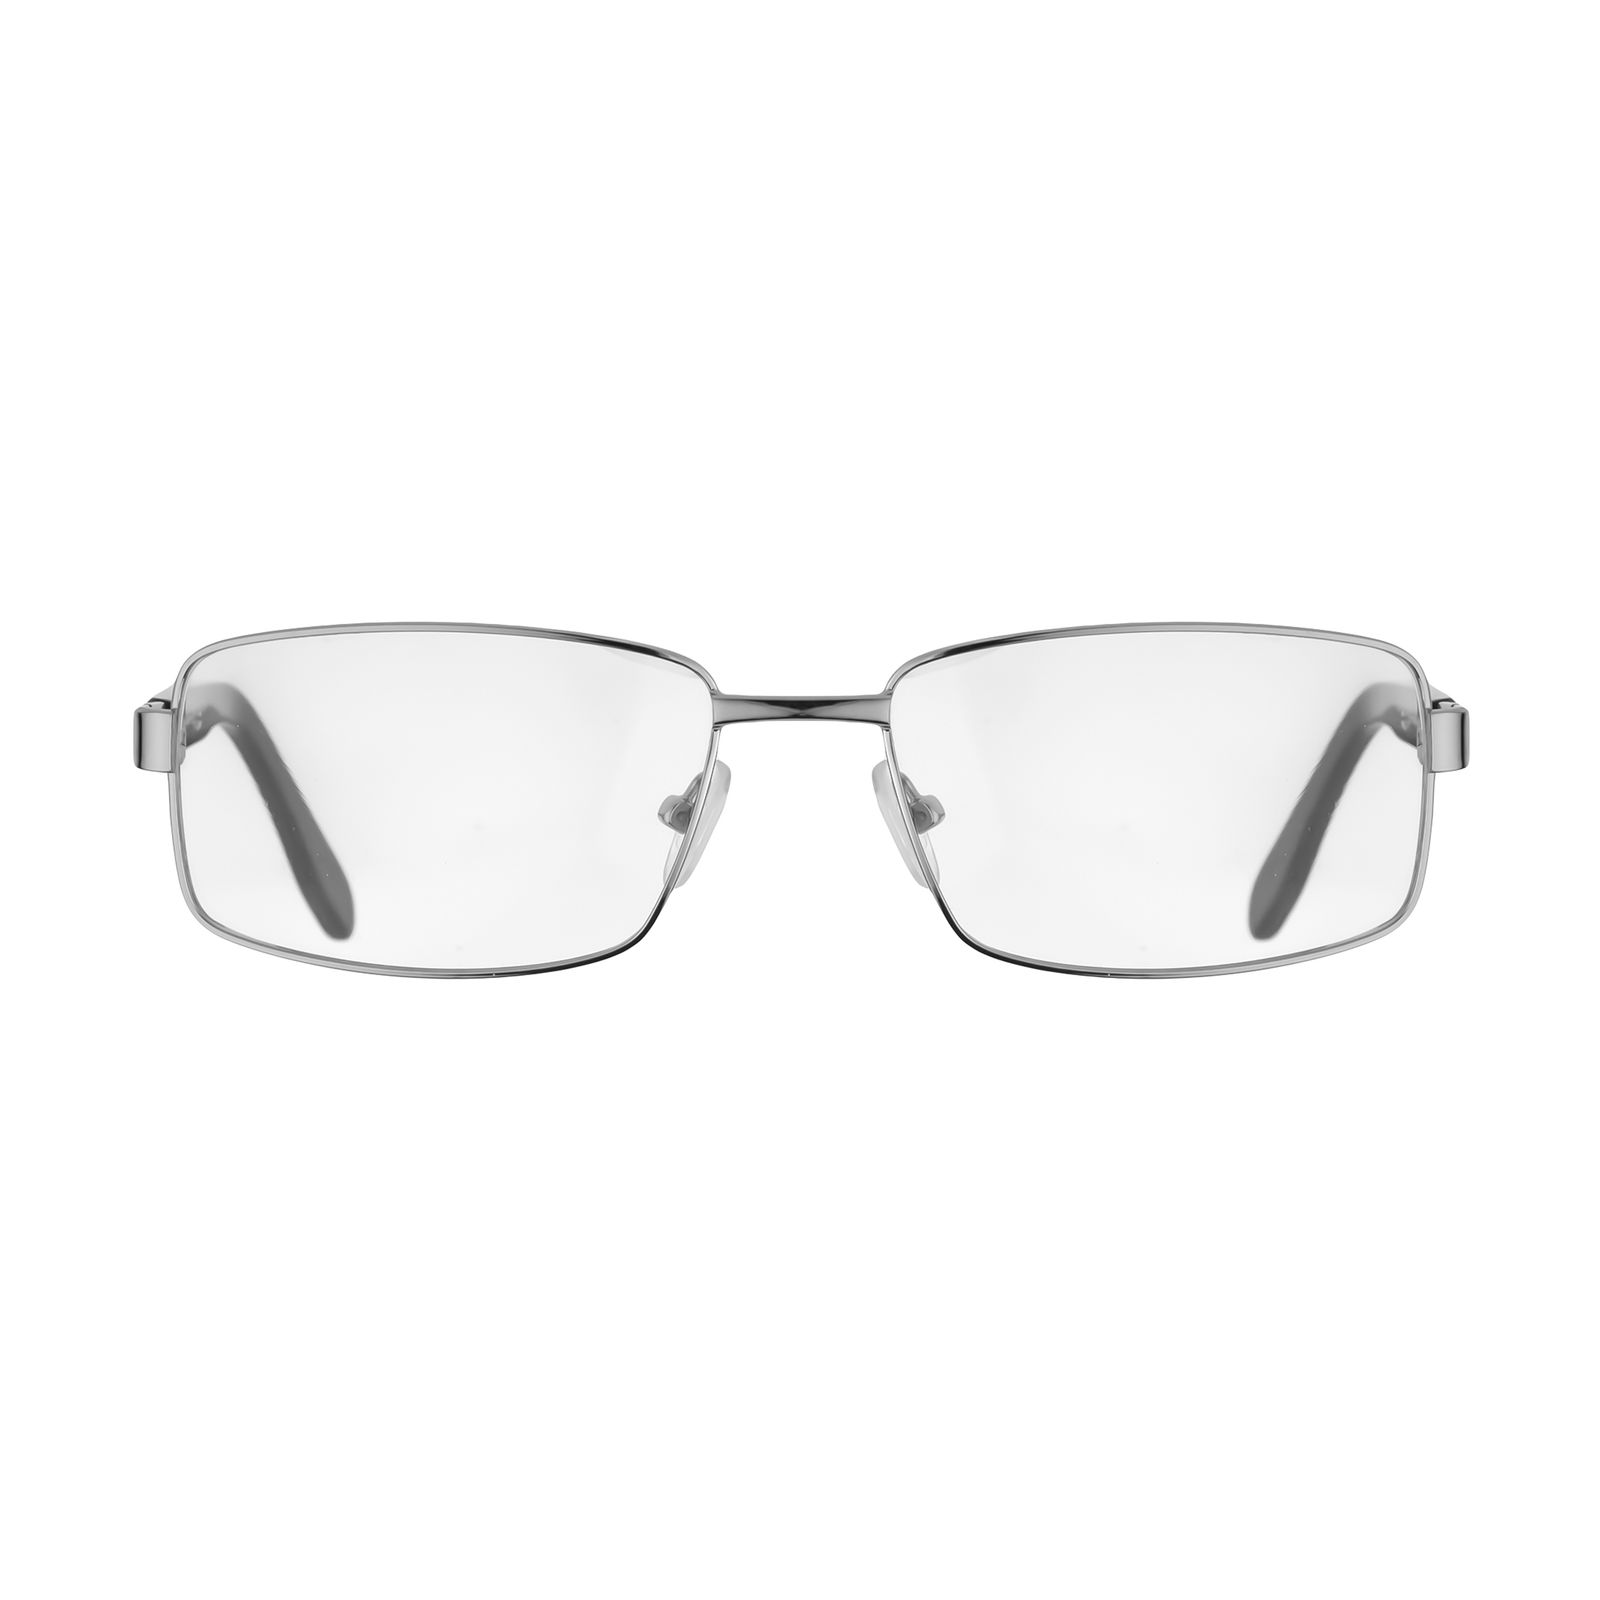 فریم عینک طبی هوگو باس مدل 4103 -  - 1